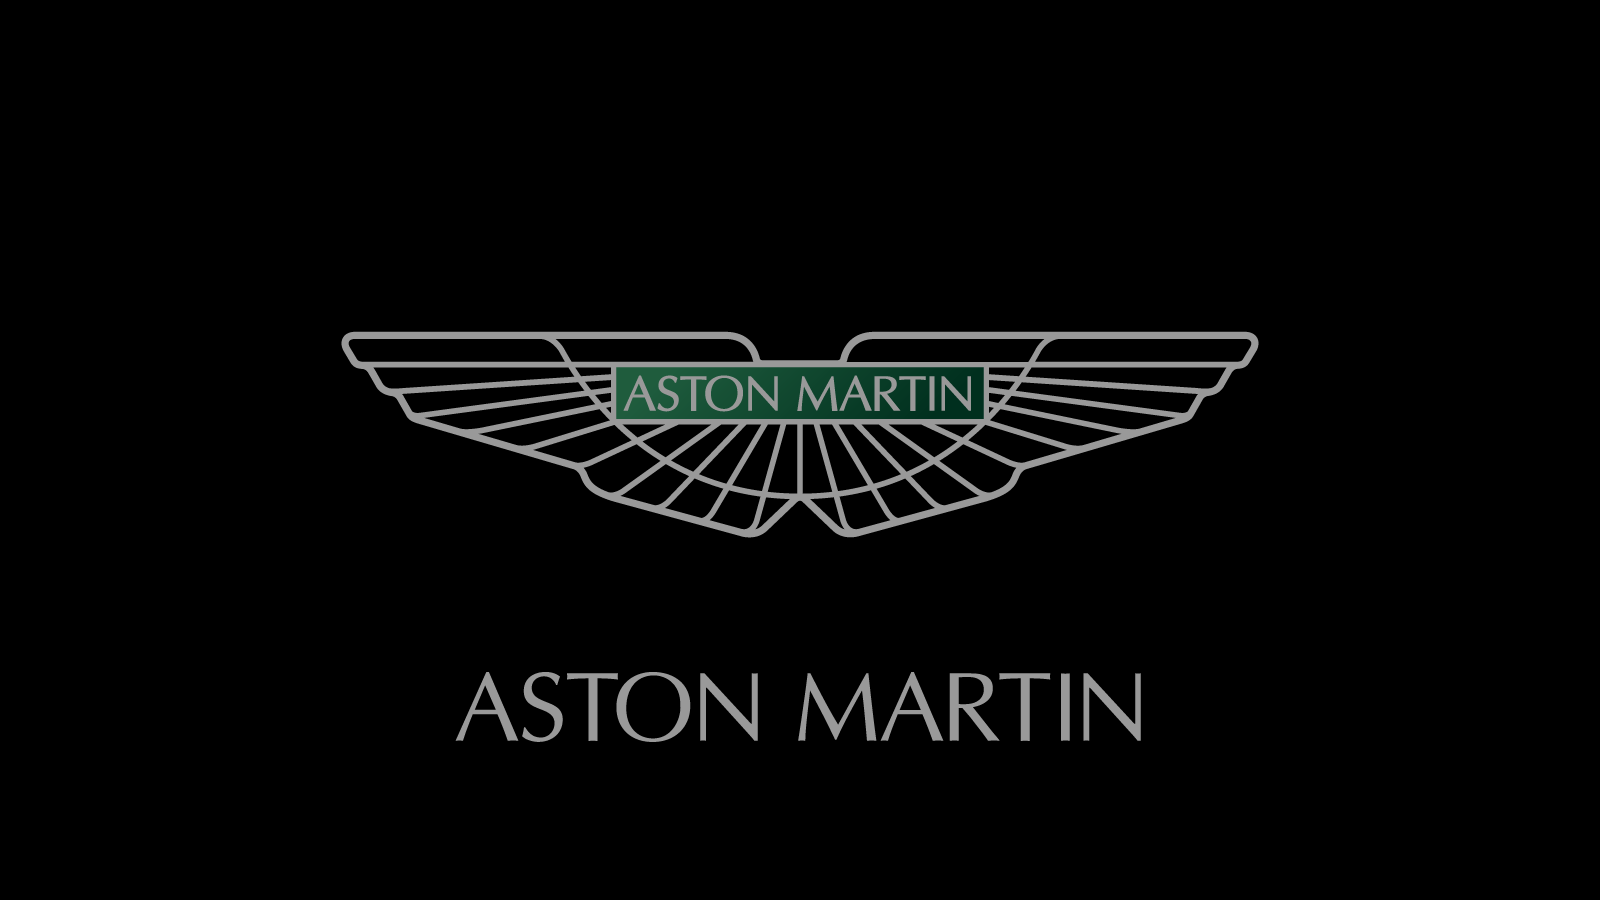 Astonmartin(アストンマーチン)